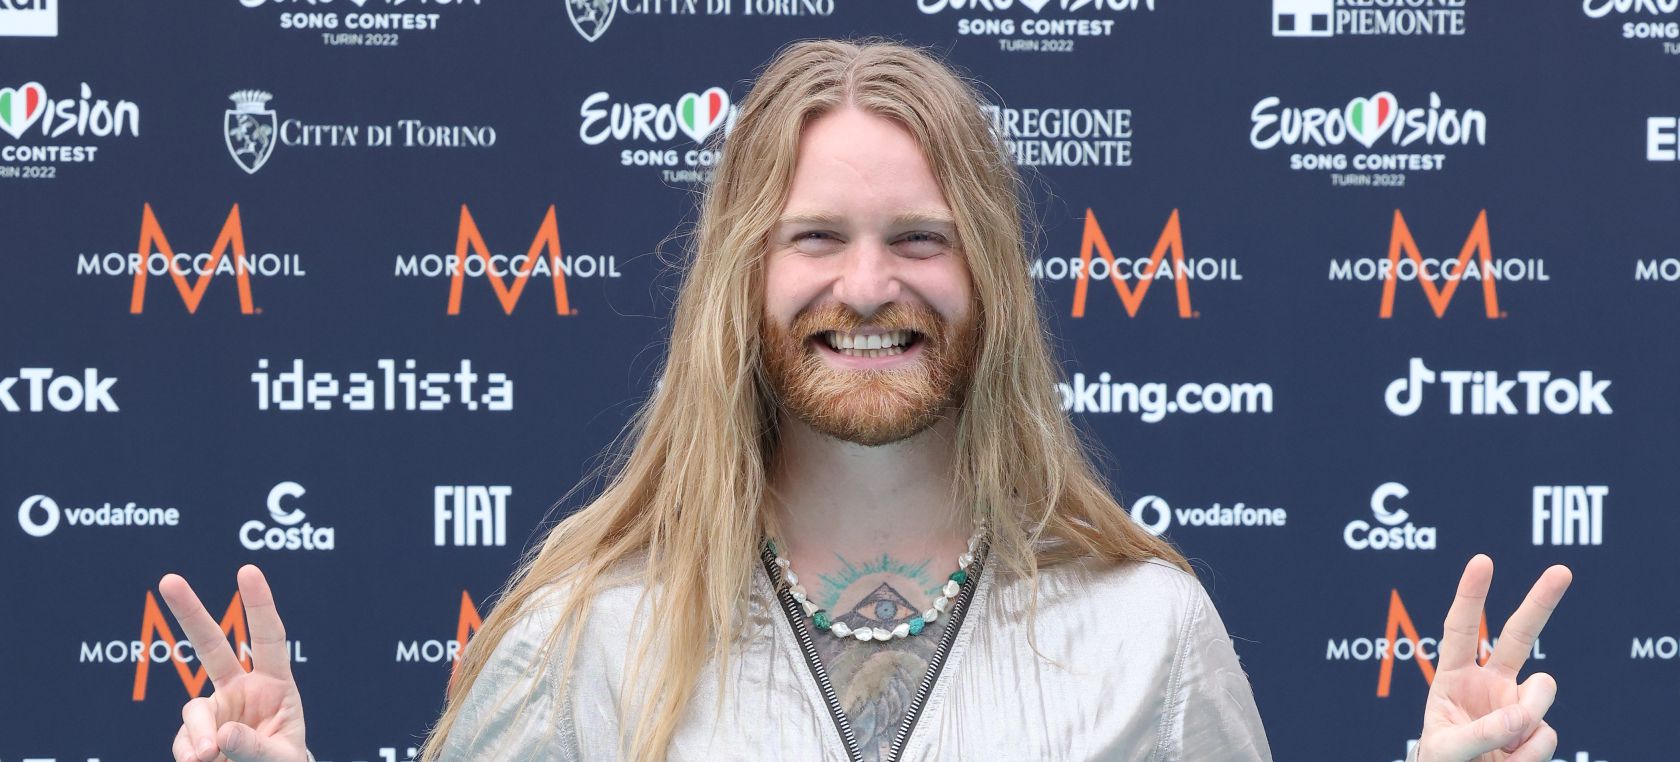 Sam Ryder, representante británico de Eurovisión 2022, visitará España con su gira